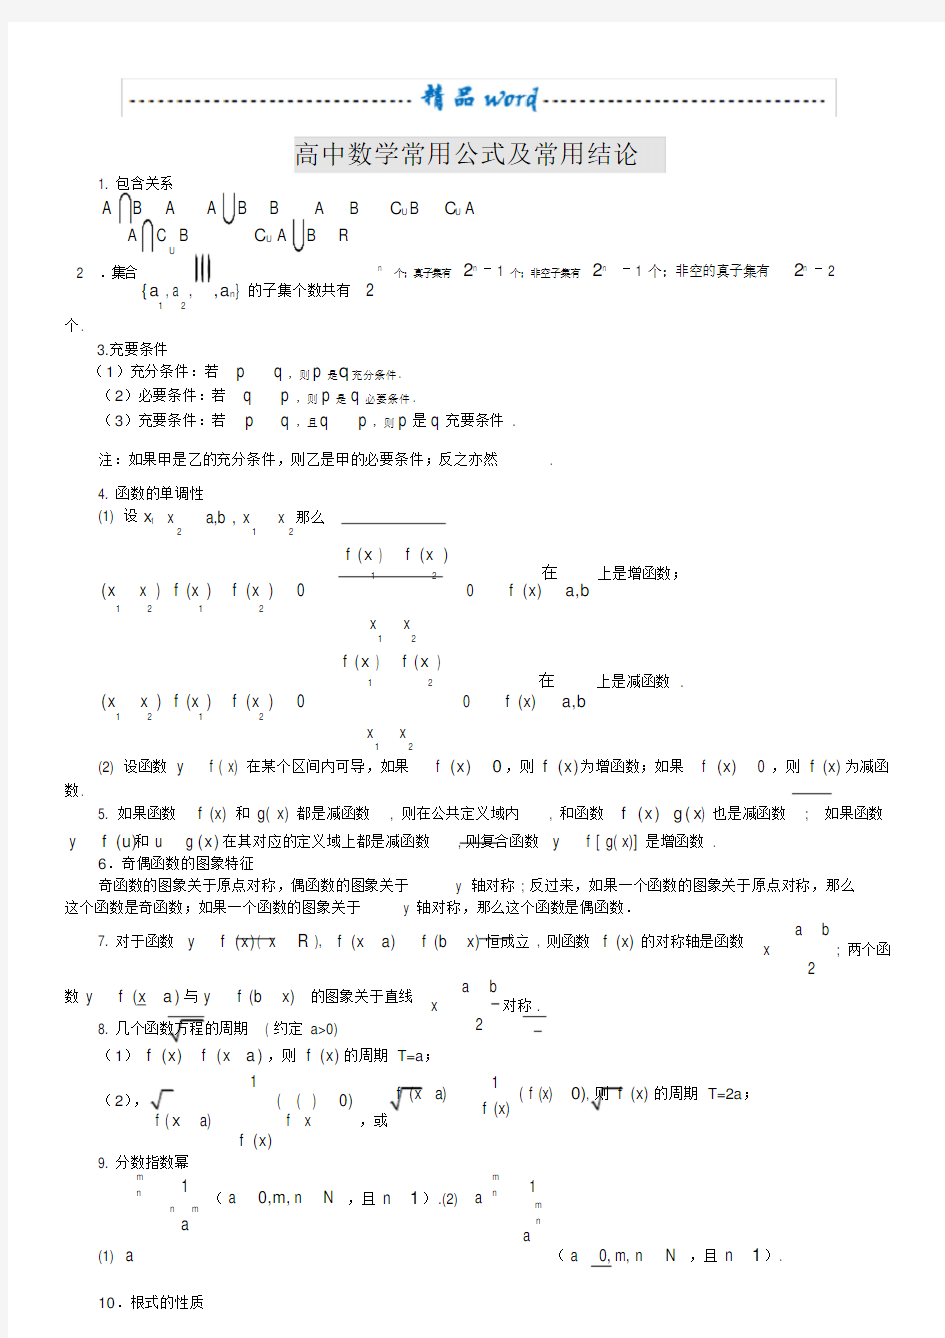 高中数学公式大全(完整版)(20210127120807)